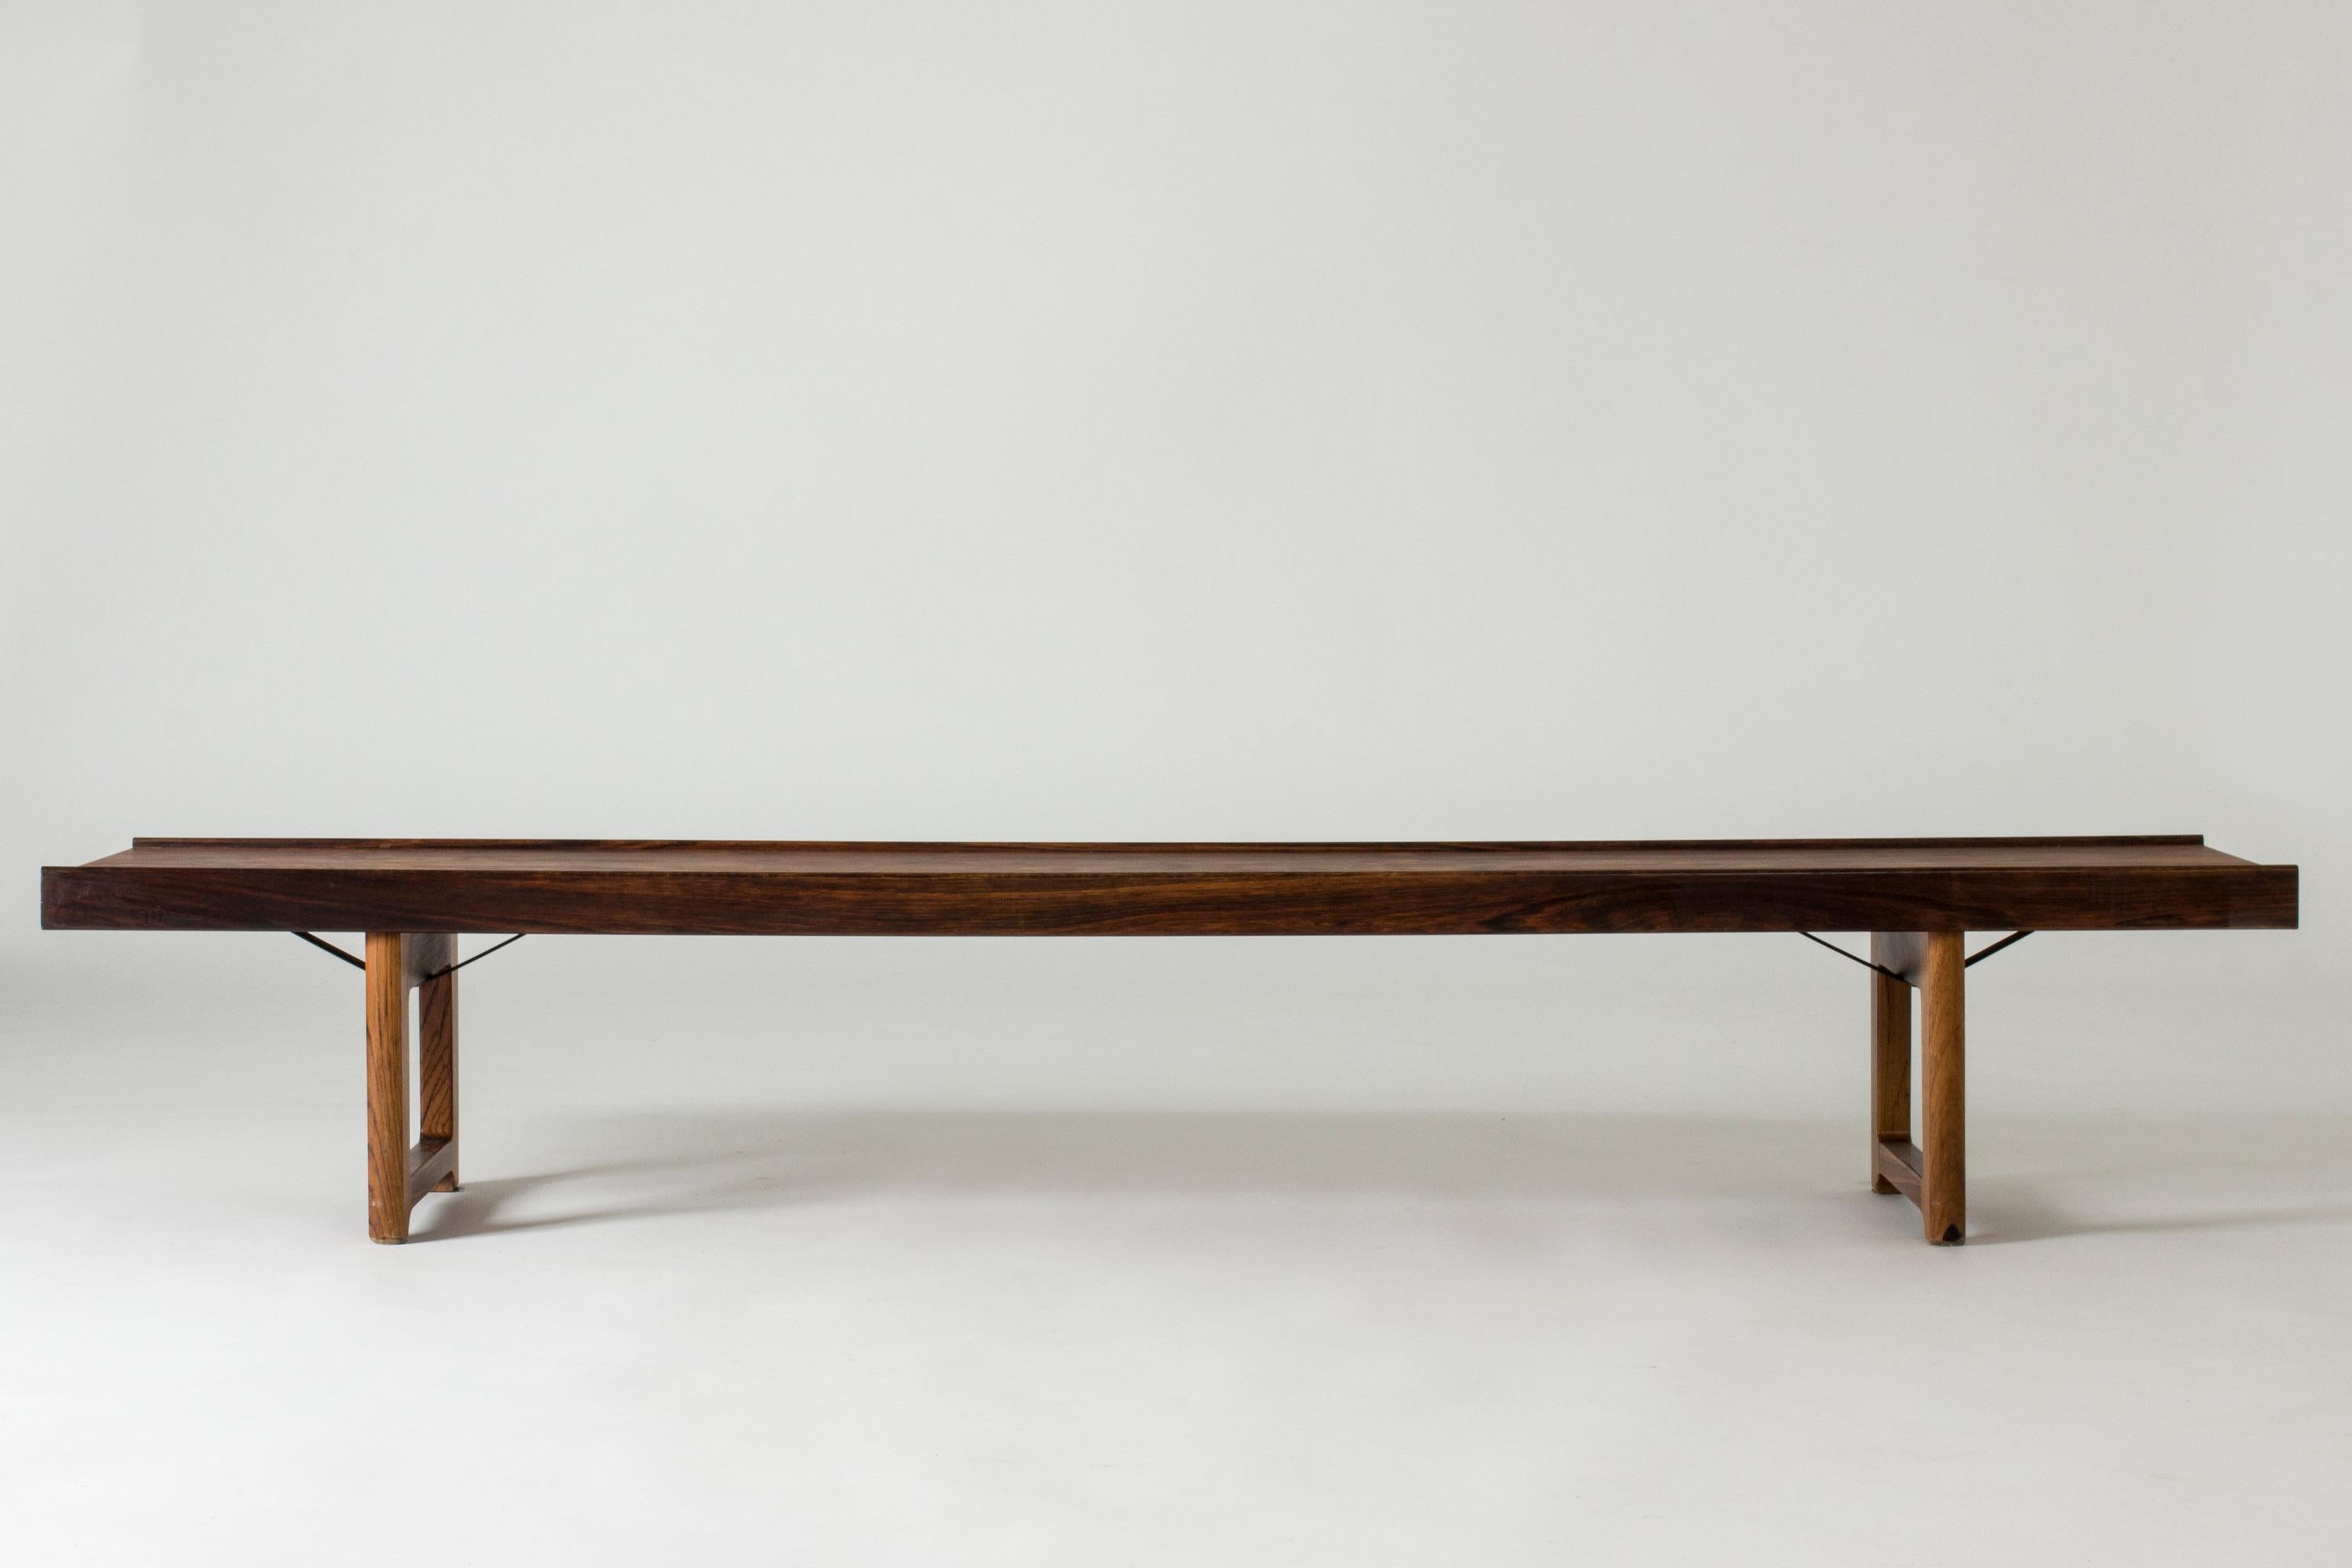 Sleek rosewood “Krobo” bench by Torbjørn Afdal, with black metal extenders underneath. Beautiful, dramatic veneer. Great as a coffee table or room divider.